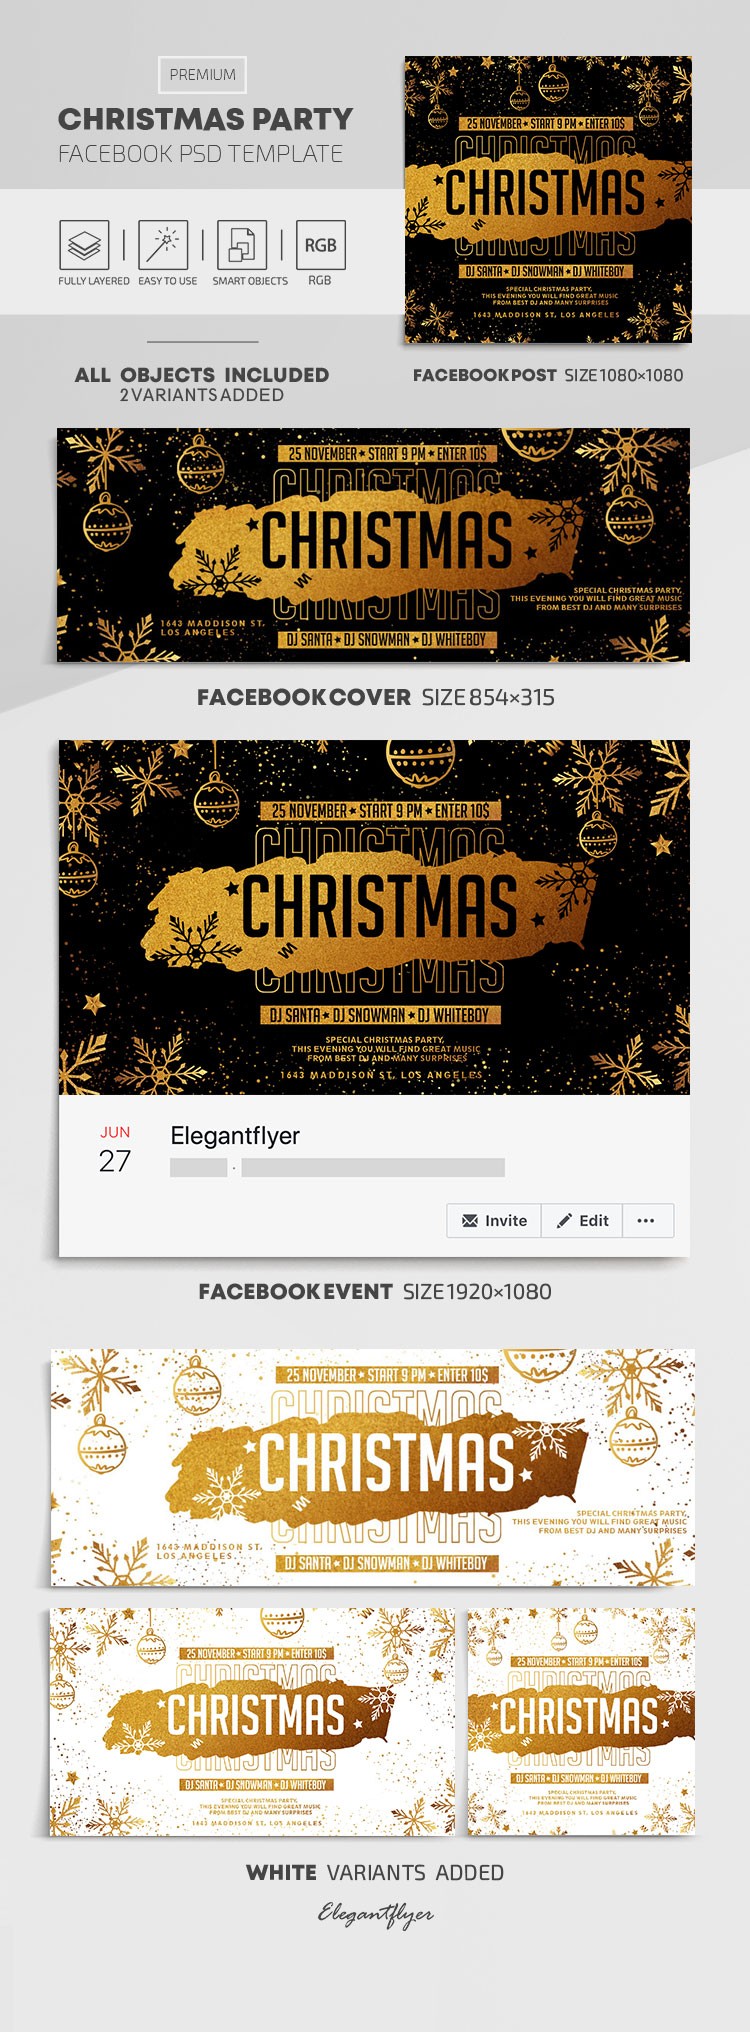 Festa de Natal no Facebook. by ElegantFlyer